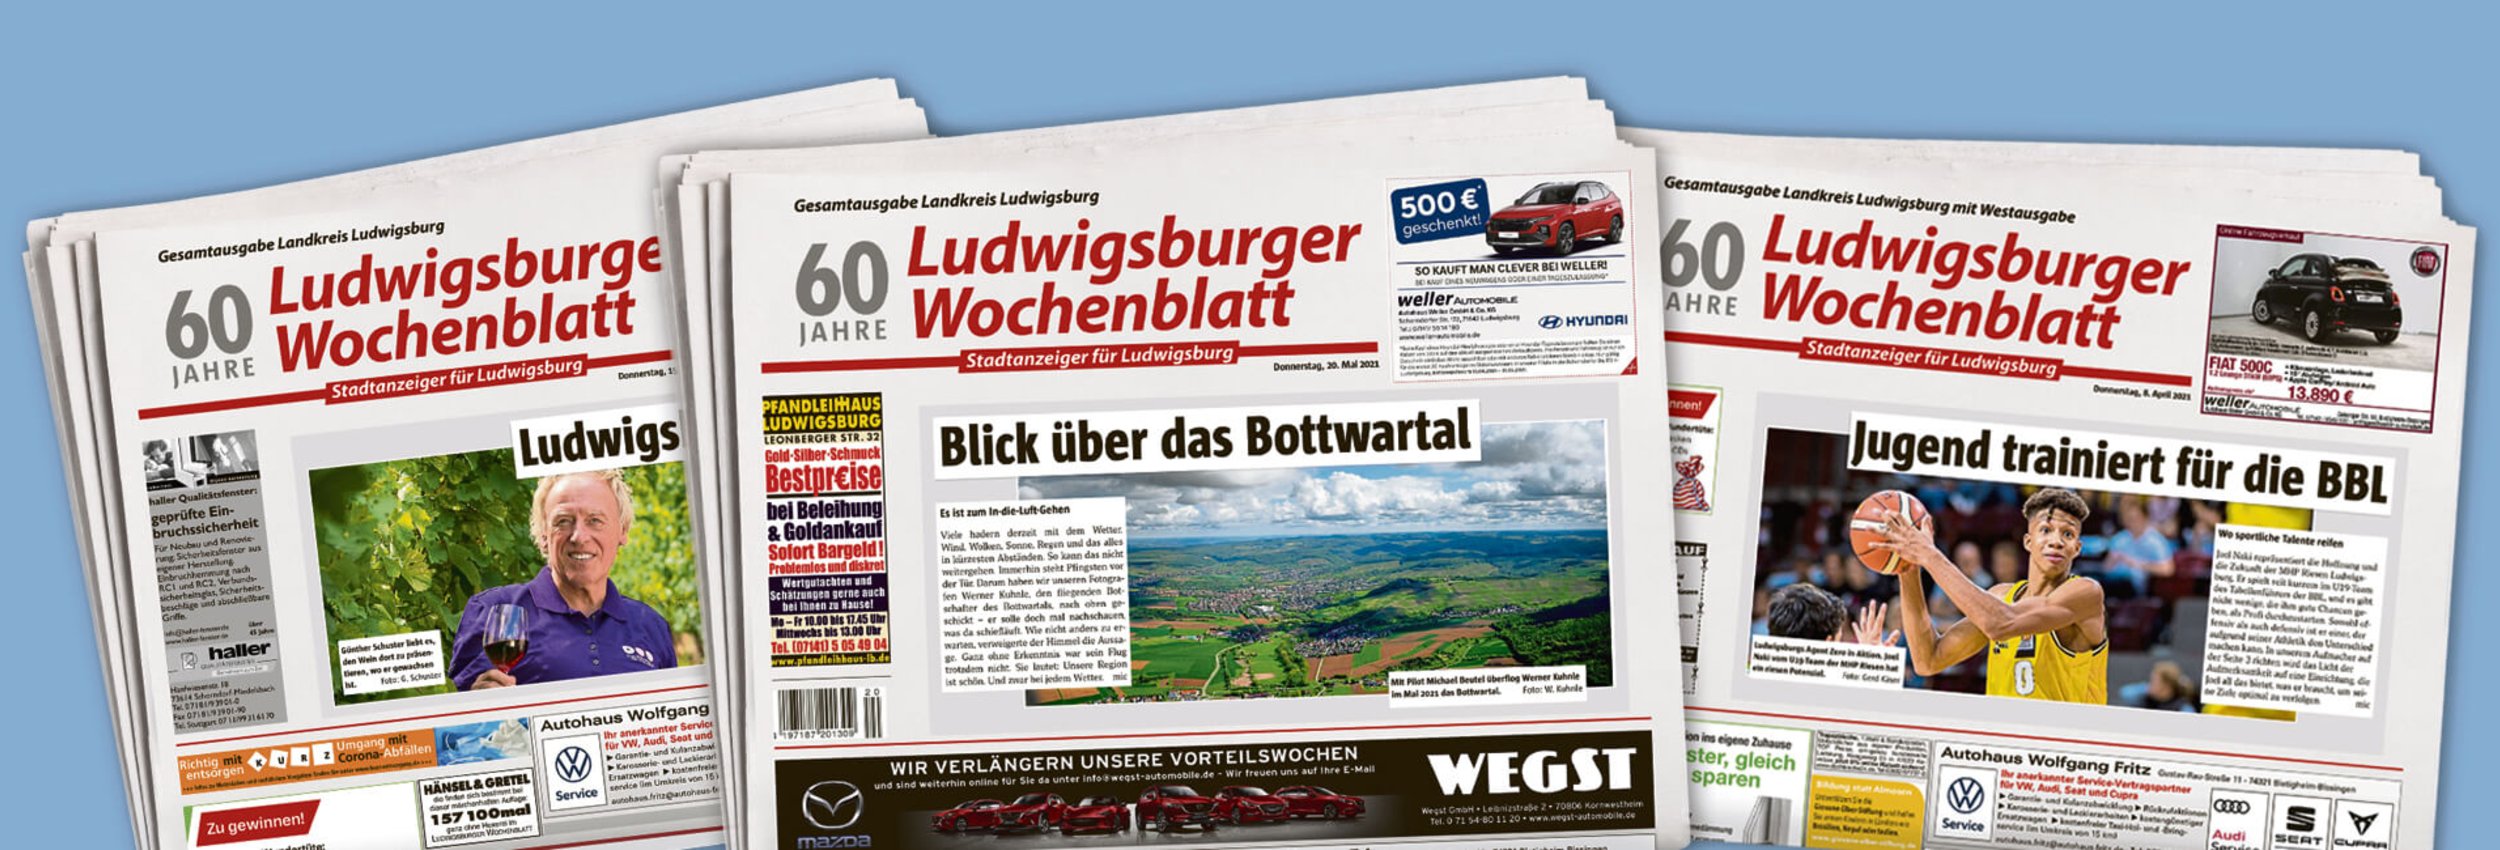 Ludwigsburger Wochenblatt